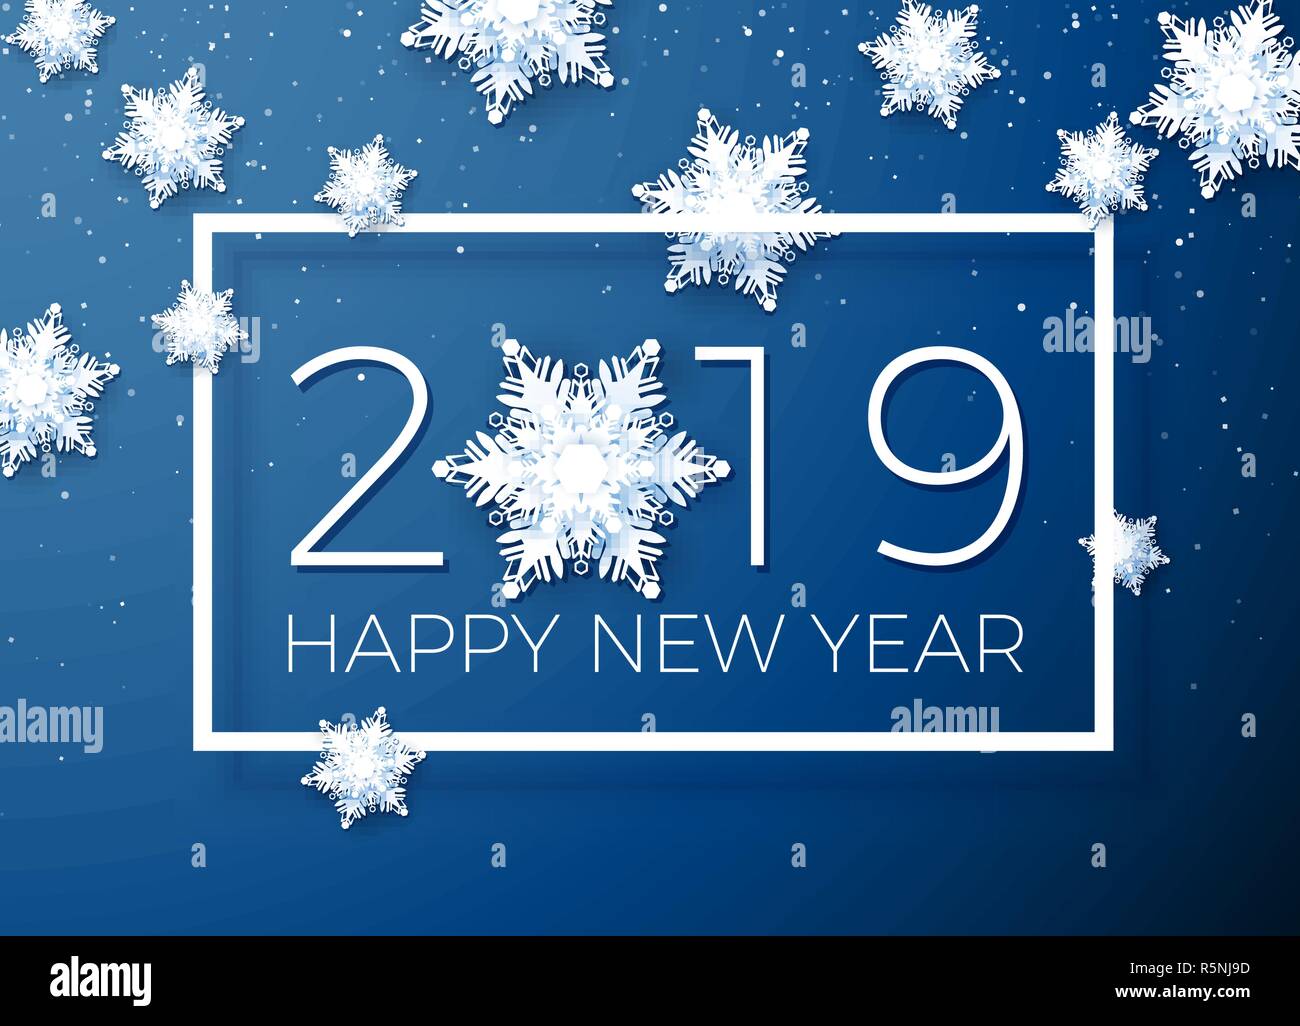 Wunschkarte Frohes Neues Jahr 2019. Papier Schneeflocken auf Hintergrund der Text in einem weißen Rahmen. Vector Illustration Stock Vektor